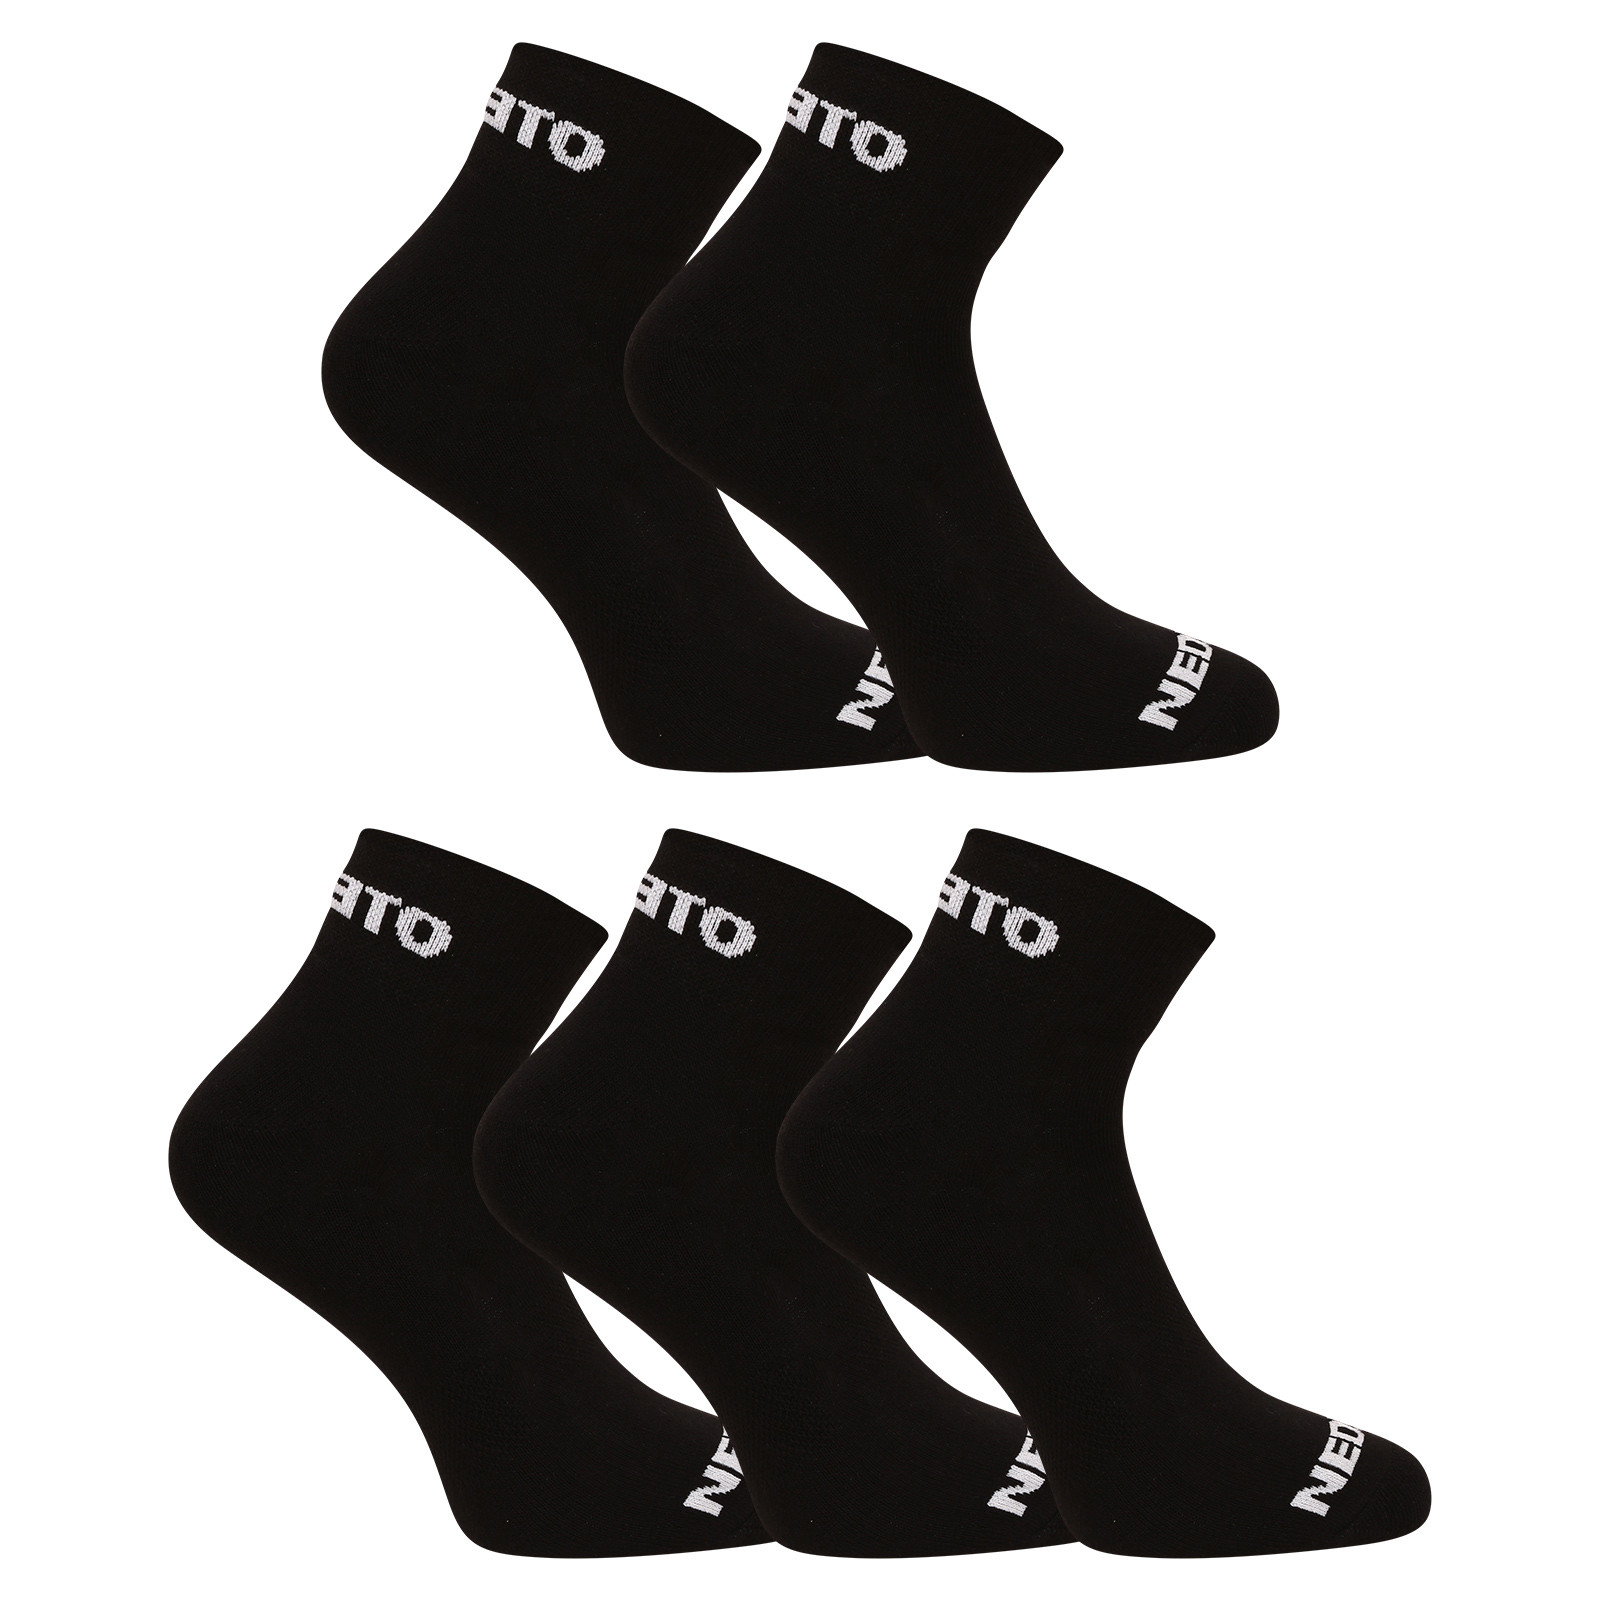 5PACK ponožky Nedeto kotníkové černé (5NDTPK001-brand) XL.
Bavlněné ponožky Nedeto ve tvém šatníku nesmí chybět
Černé ponožky Nedeto tě přesvědčí, že vysoké ponožky rozhodně nepatří do propadliště dějin.
Ponožky Nedeto tě nezklamou
České ponožky Nedeto vyrábíme tak, aby se skvěle nosily za všech okolností.